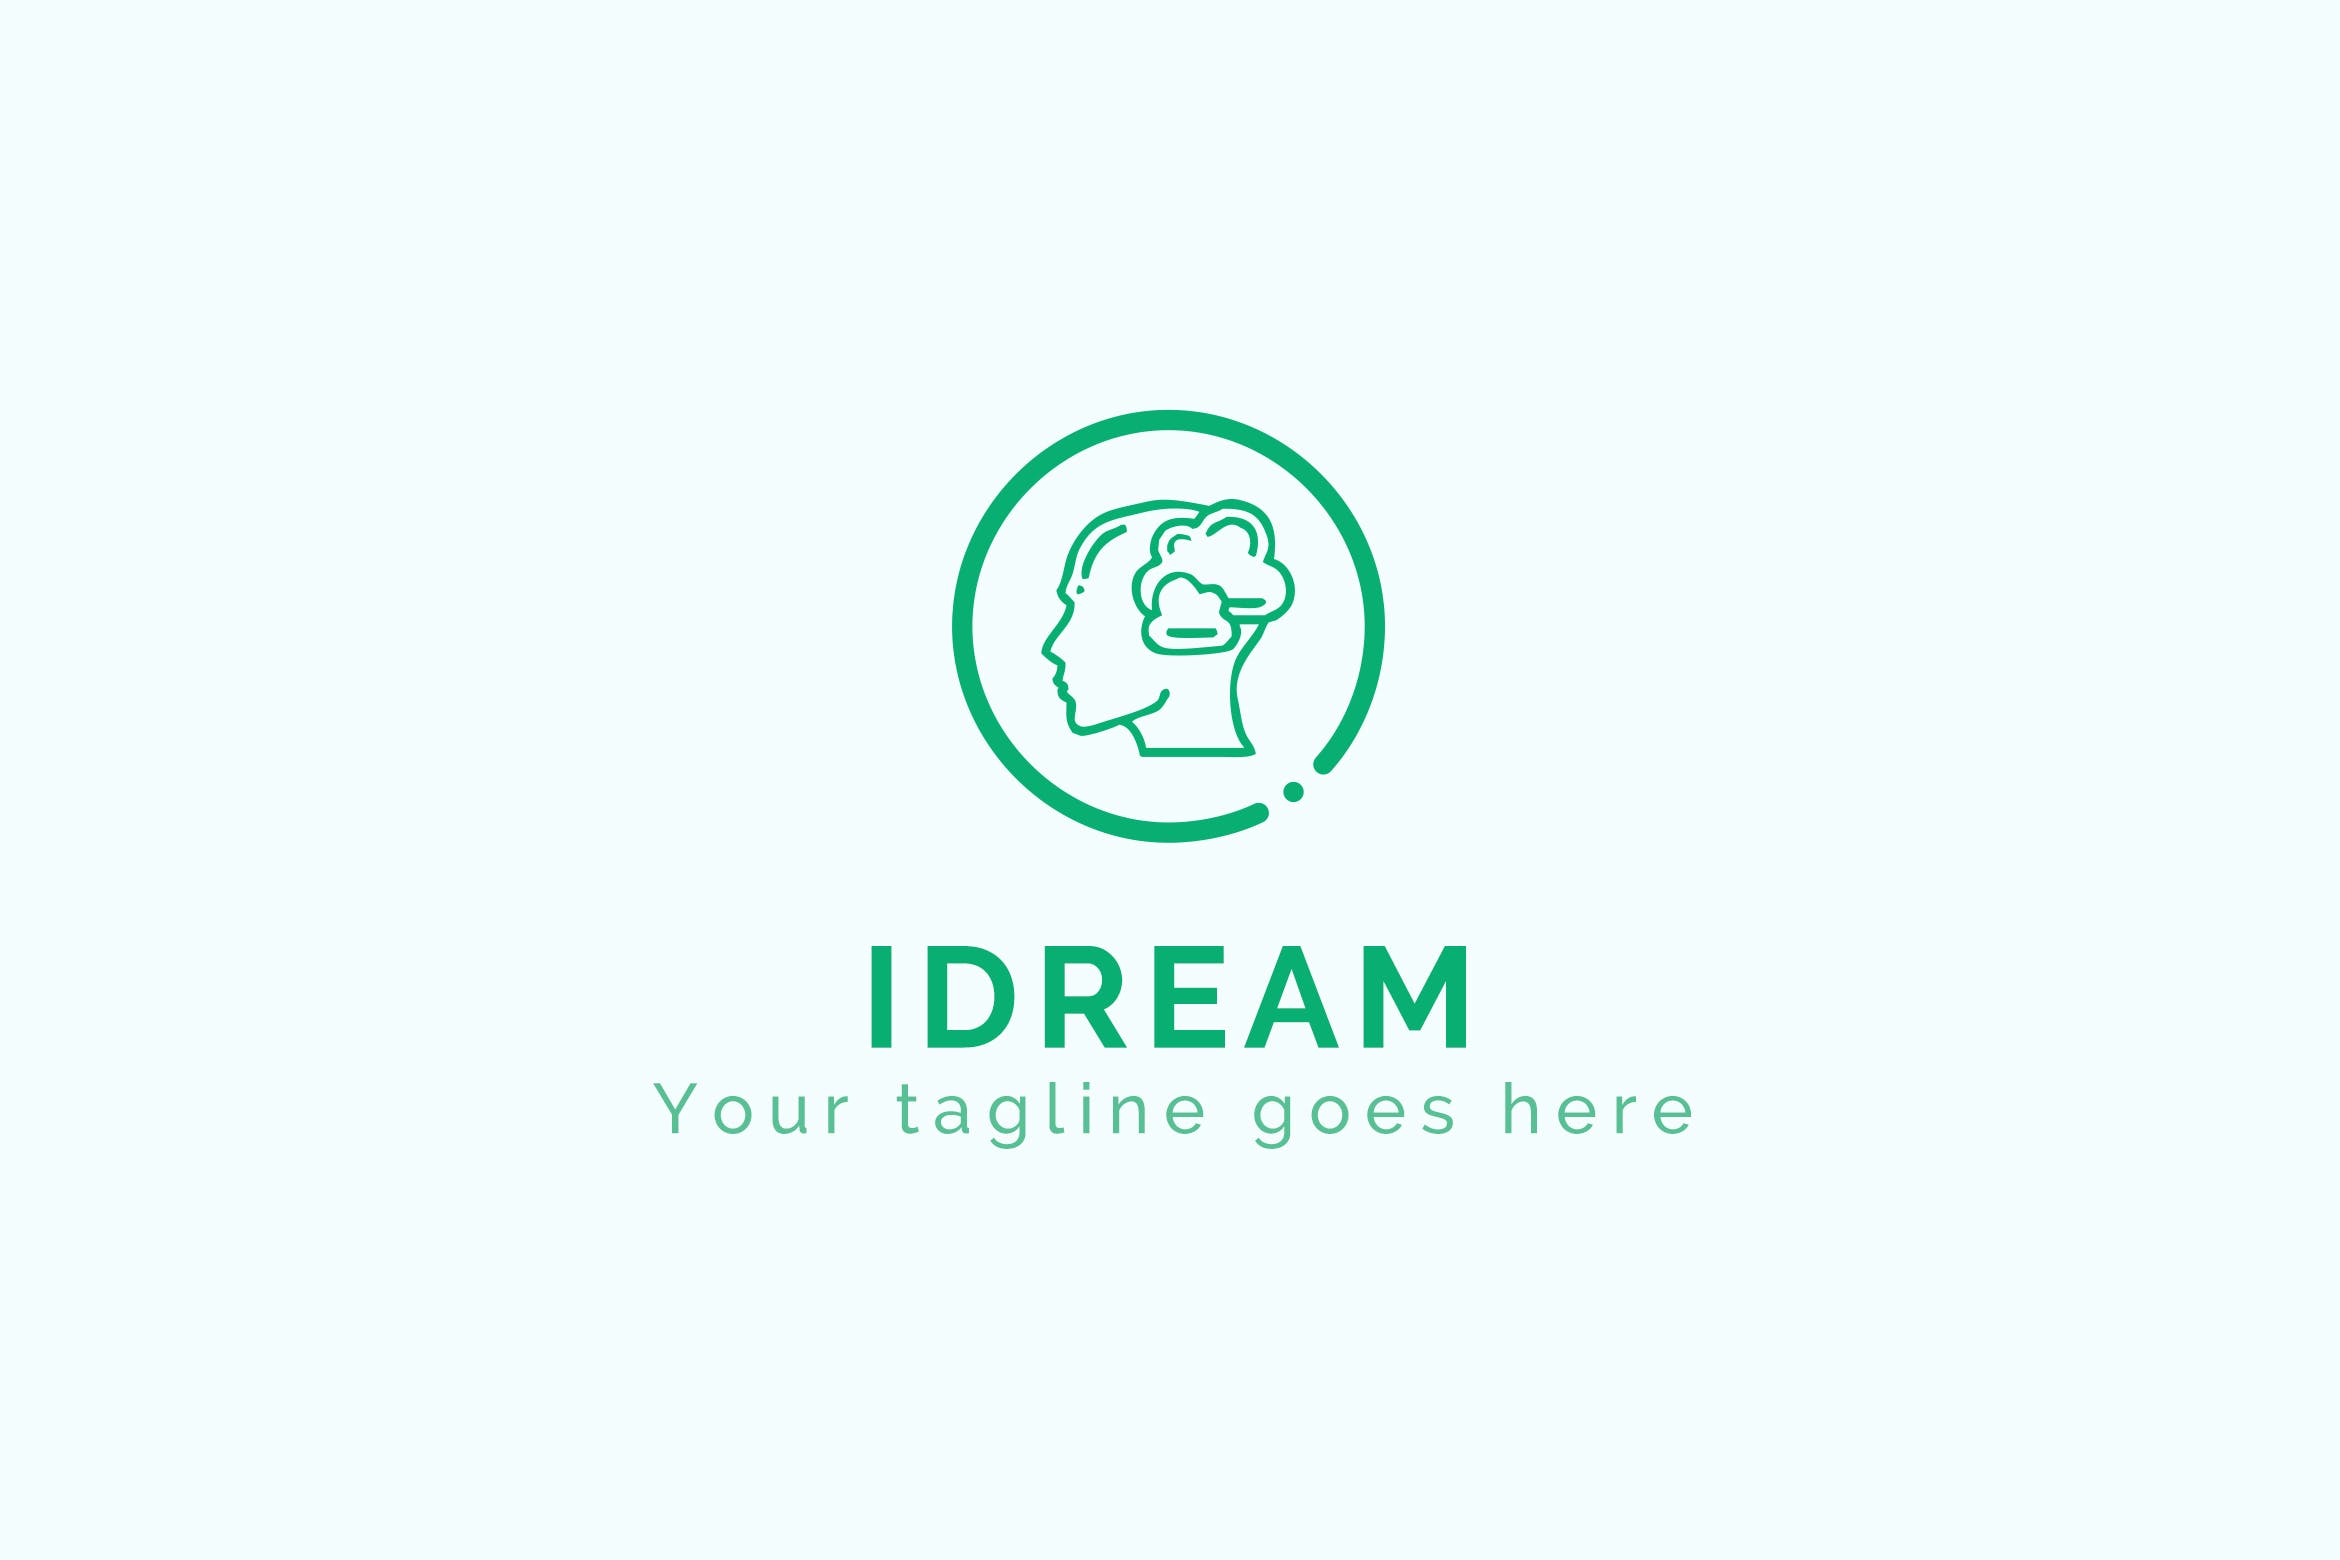 大脑开发抽象图形Logo商标设计模板 iDream – Creative Logo Design插图